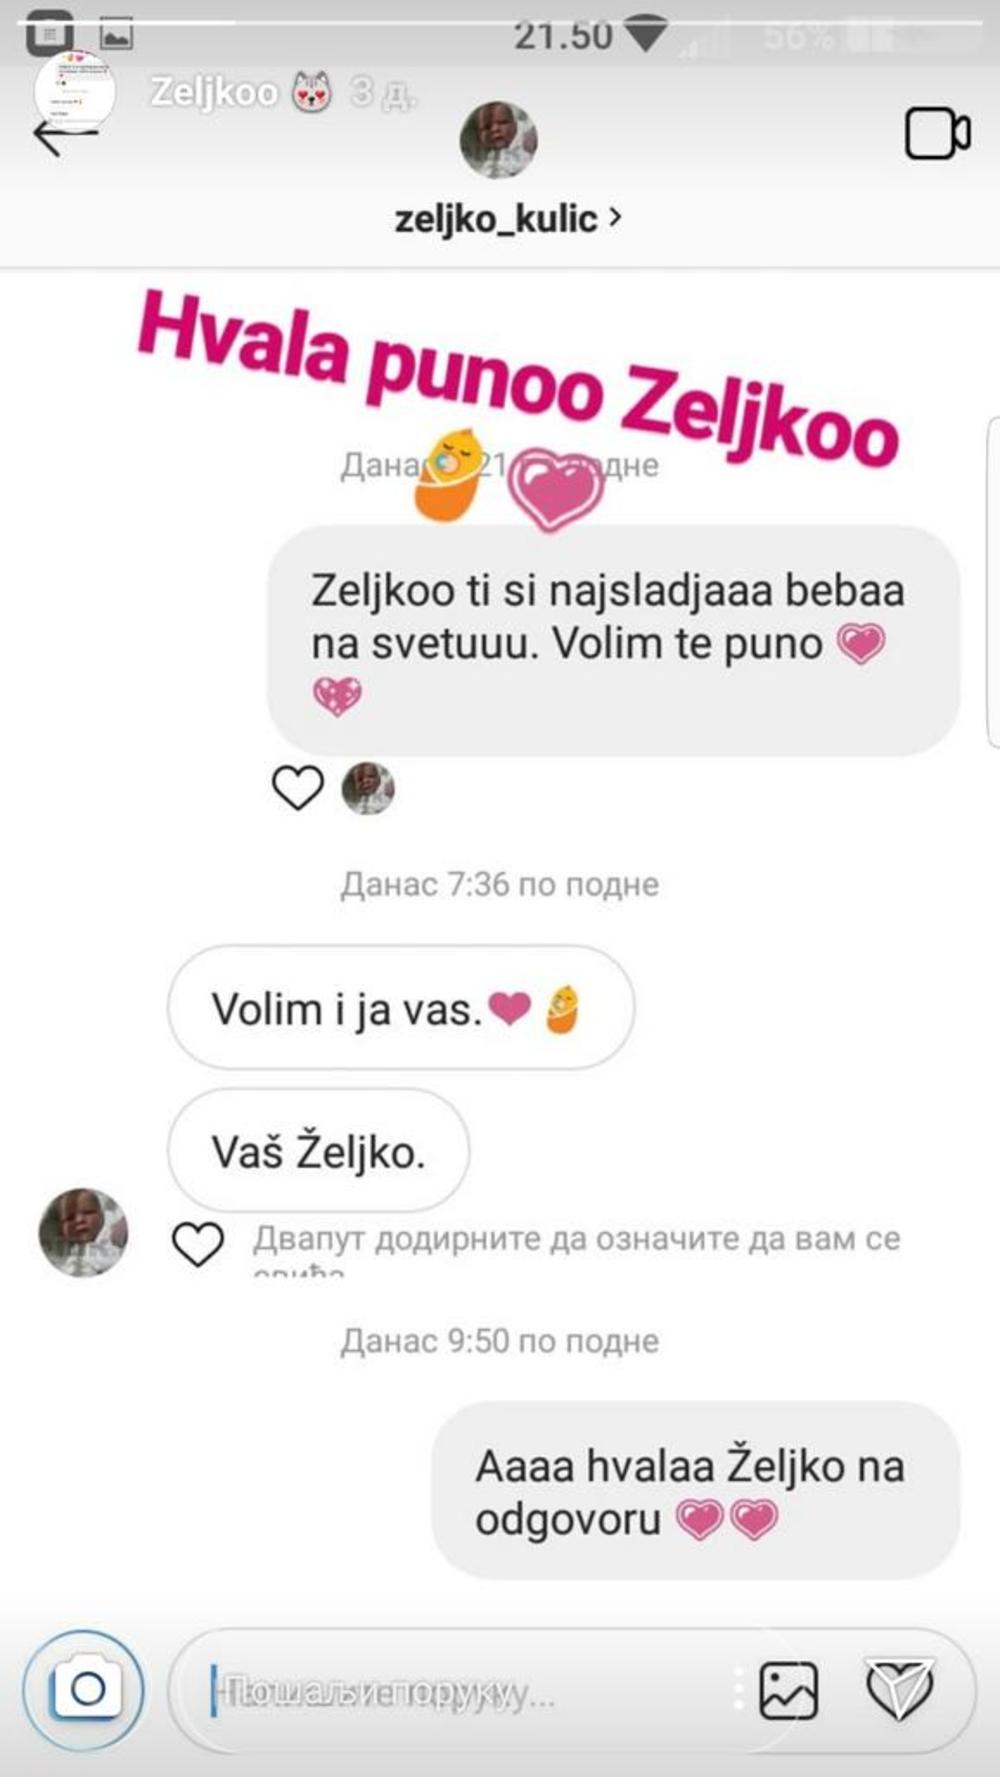 Željko Kulić već ima svoj profil na Instagramu  